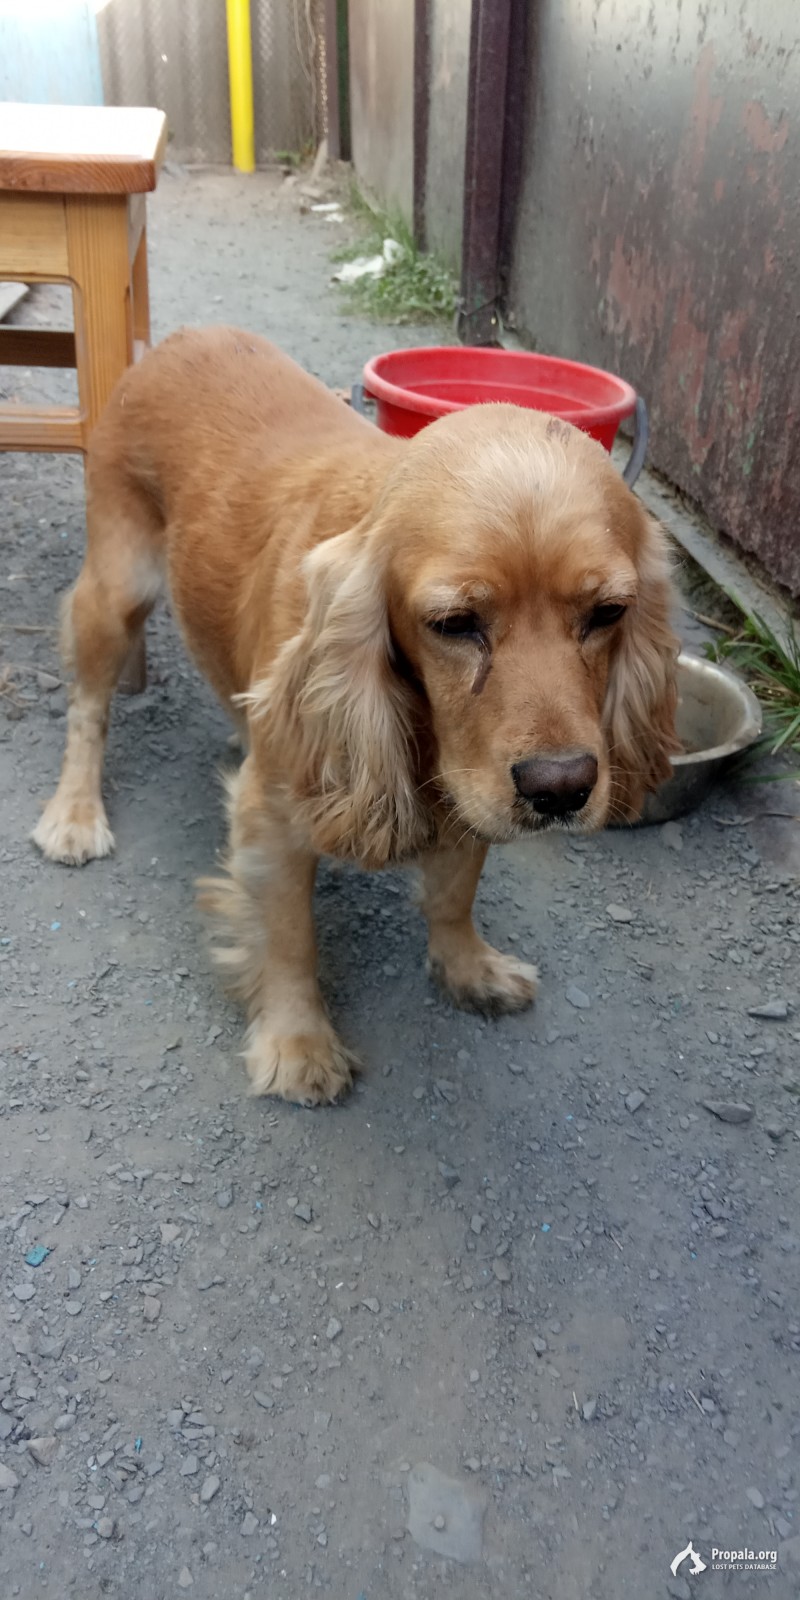 Найдена собака породы Кокер спаниель рыжая в г. Батайск